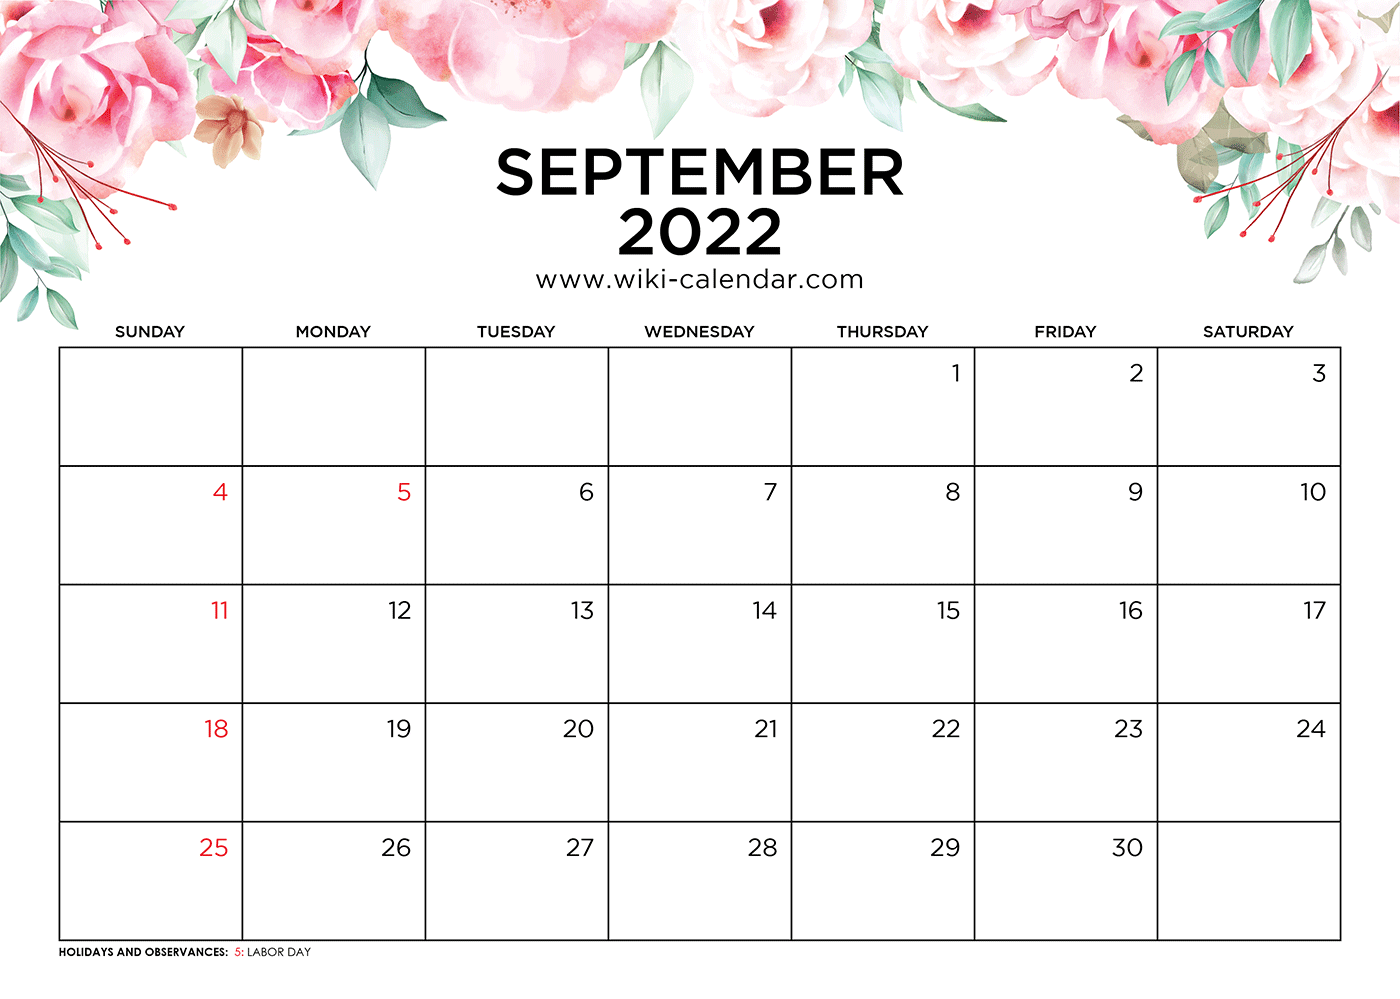 Monthly Calendar September 2022 Free Printable September 2022 Calendars - Wiki Calendar